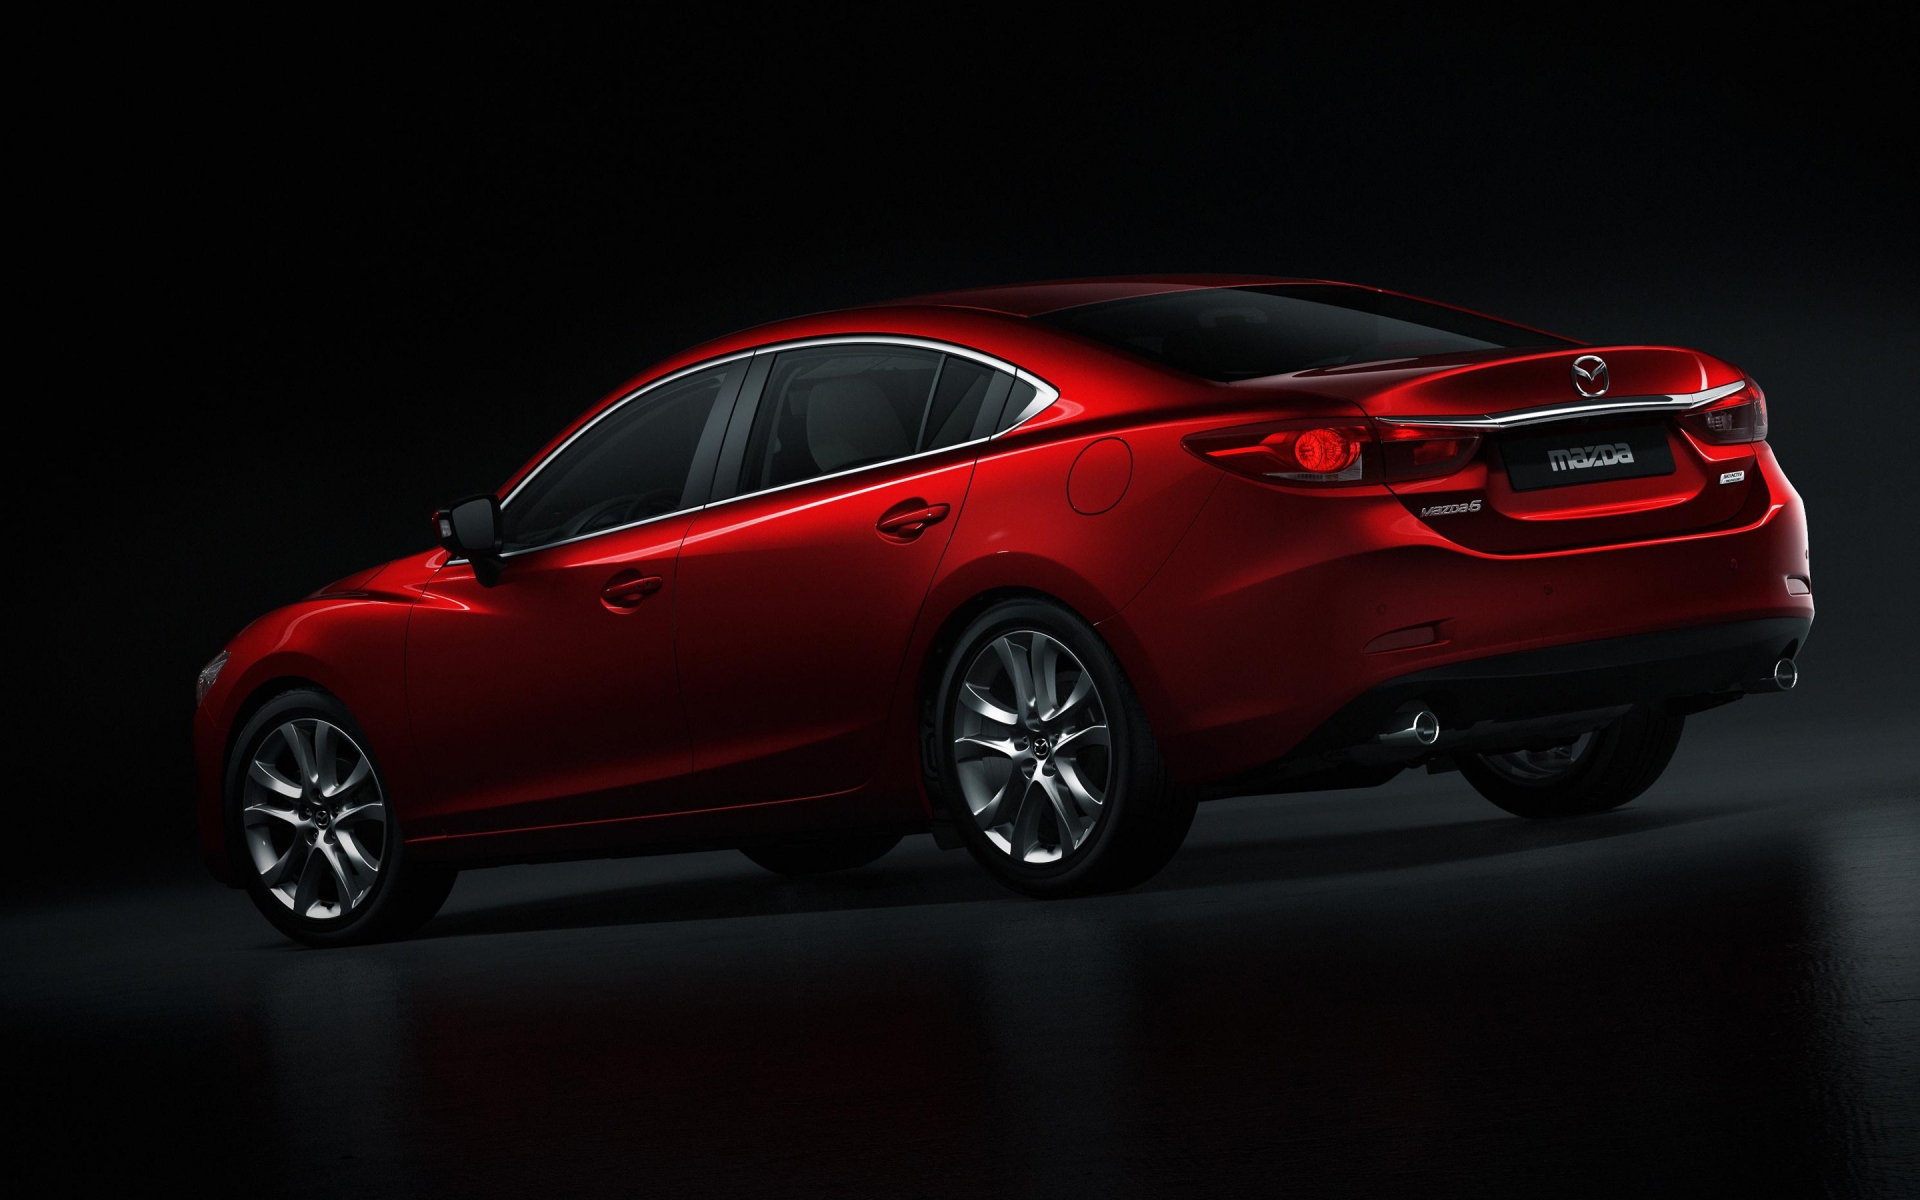 Mazda 6 2014 Rear Studio for 1920 x 1200 widescreen resolution